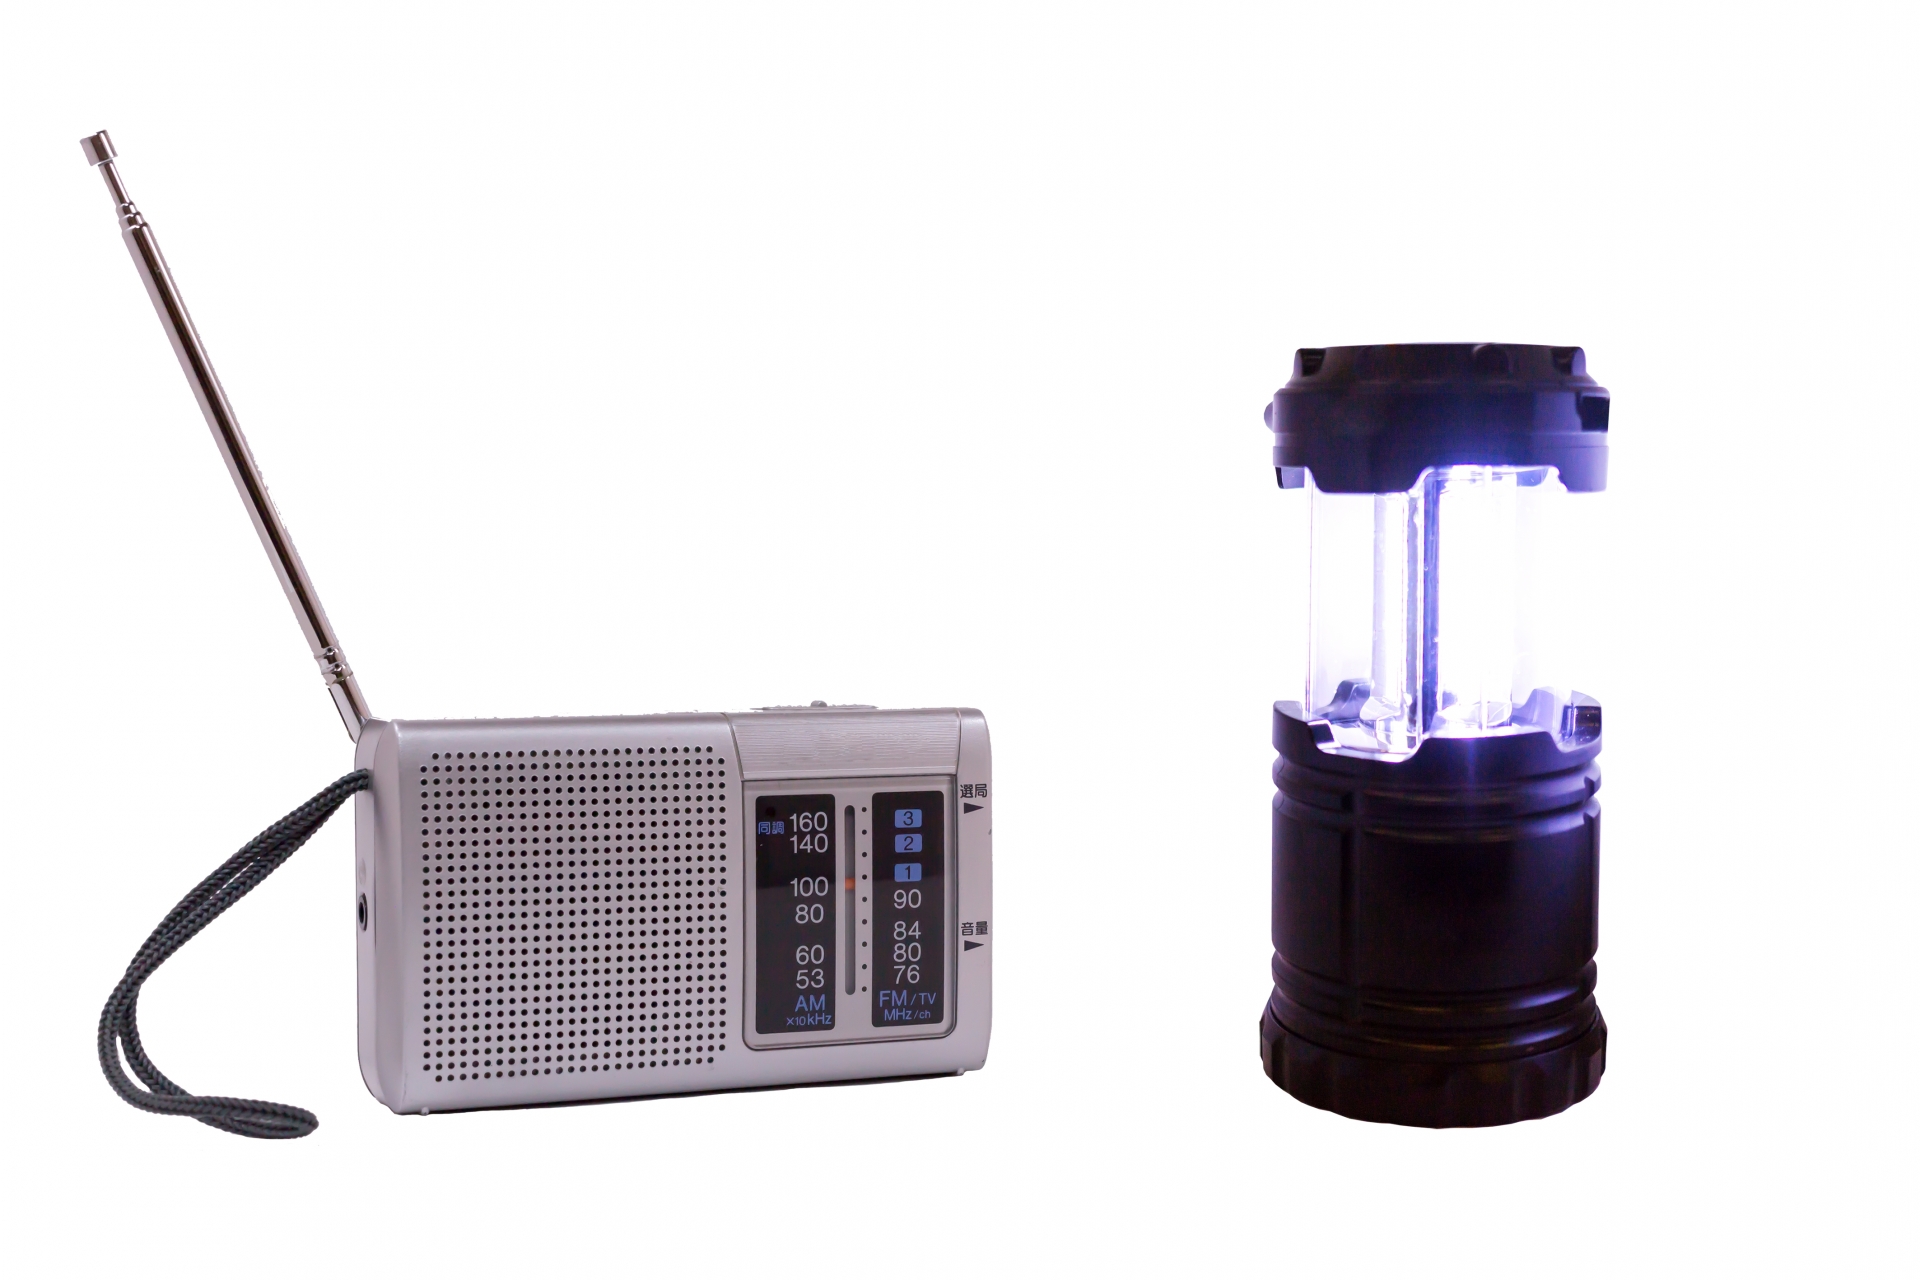 高感度な携帯ラジオおすすめ10選 5つの選び方とおしゃれ 防災向けの製品をご紹介 タヌドア